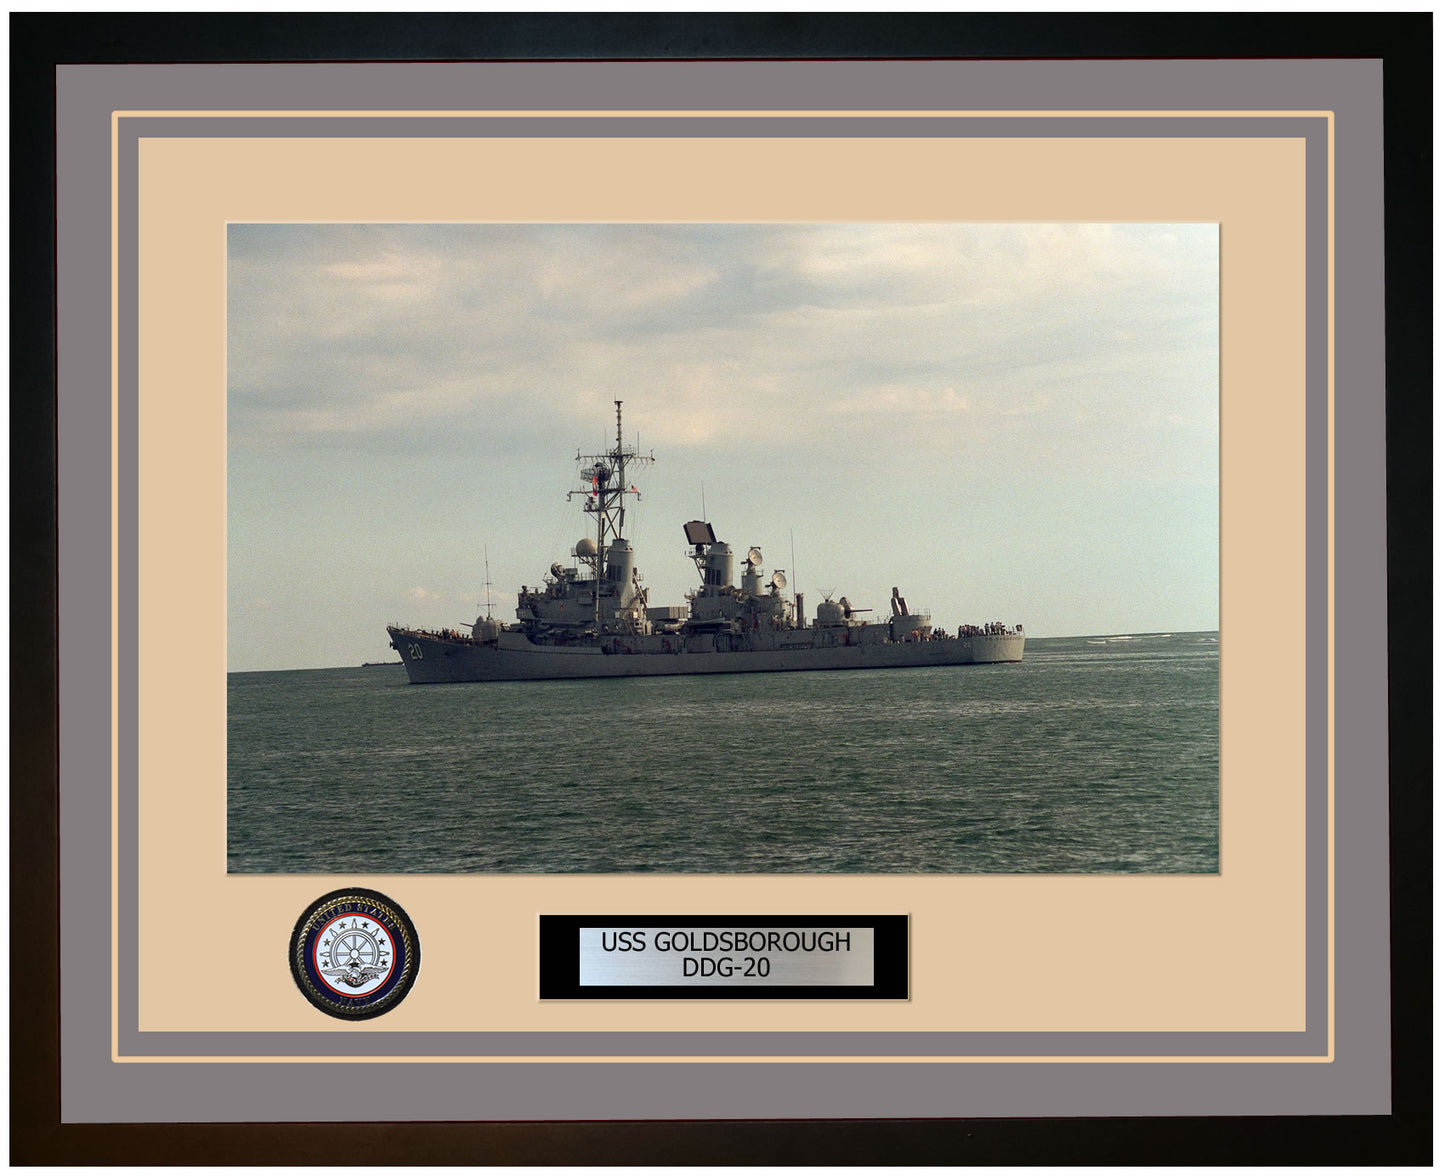 USS GOLDSBOROUGH DDG-20 Framed Navy Ship Photo Grey